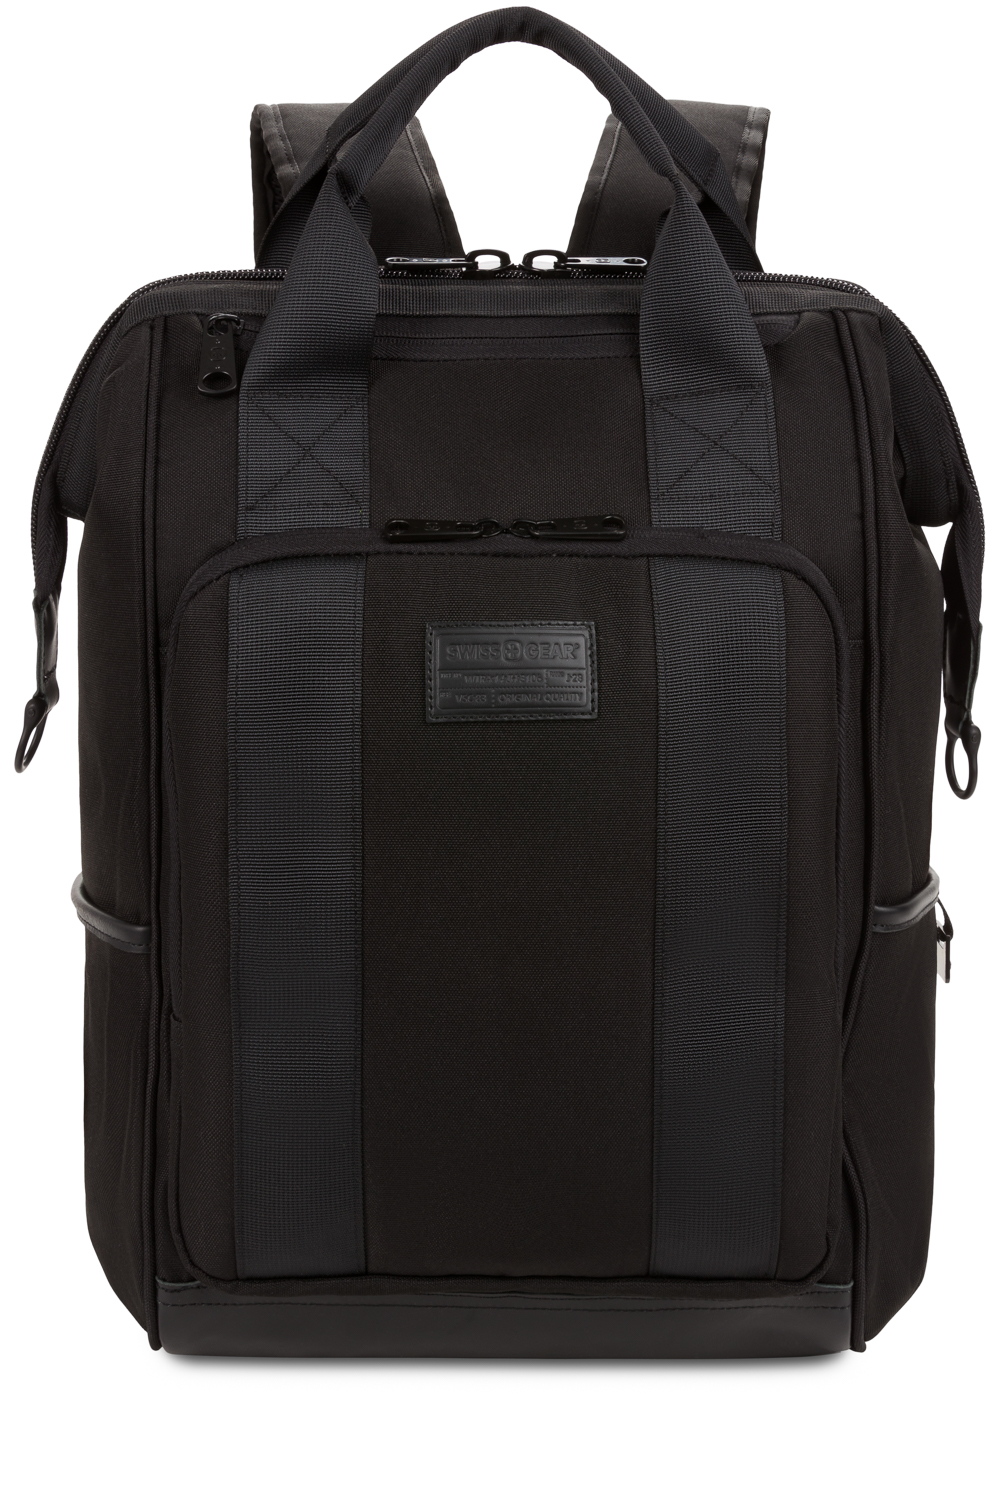 SWISSGEAR 3577 Artz Laptop Backpack - Black Stealth